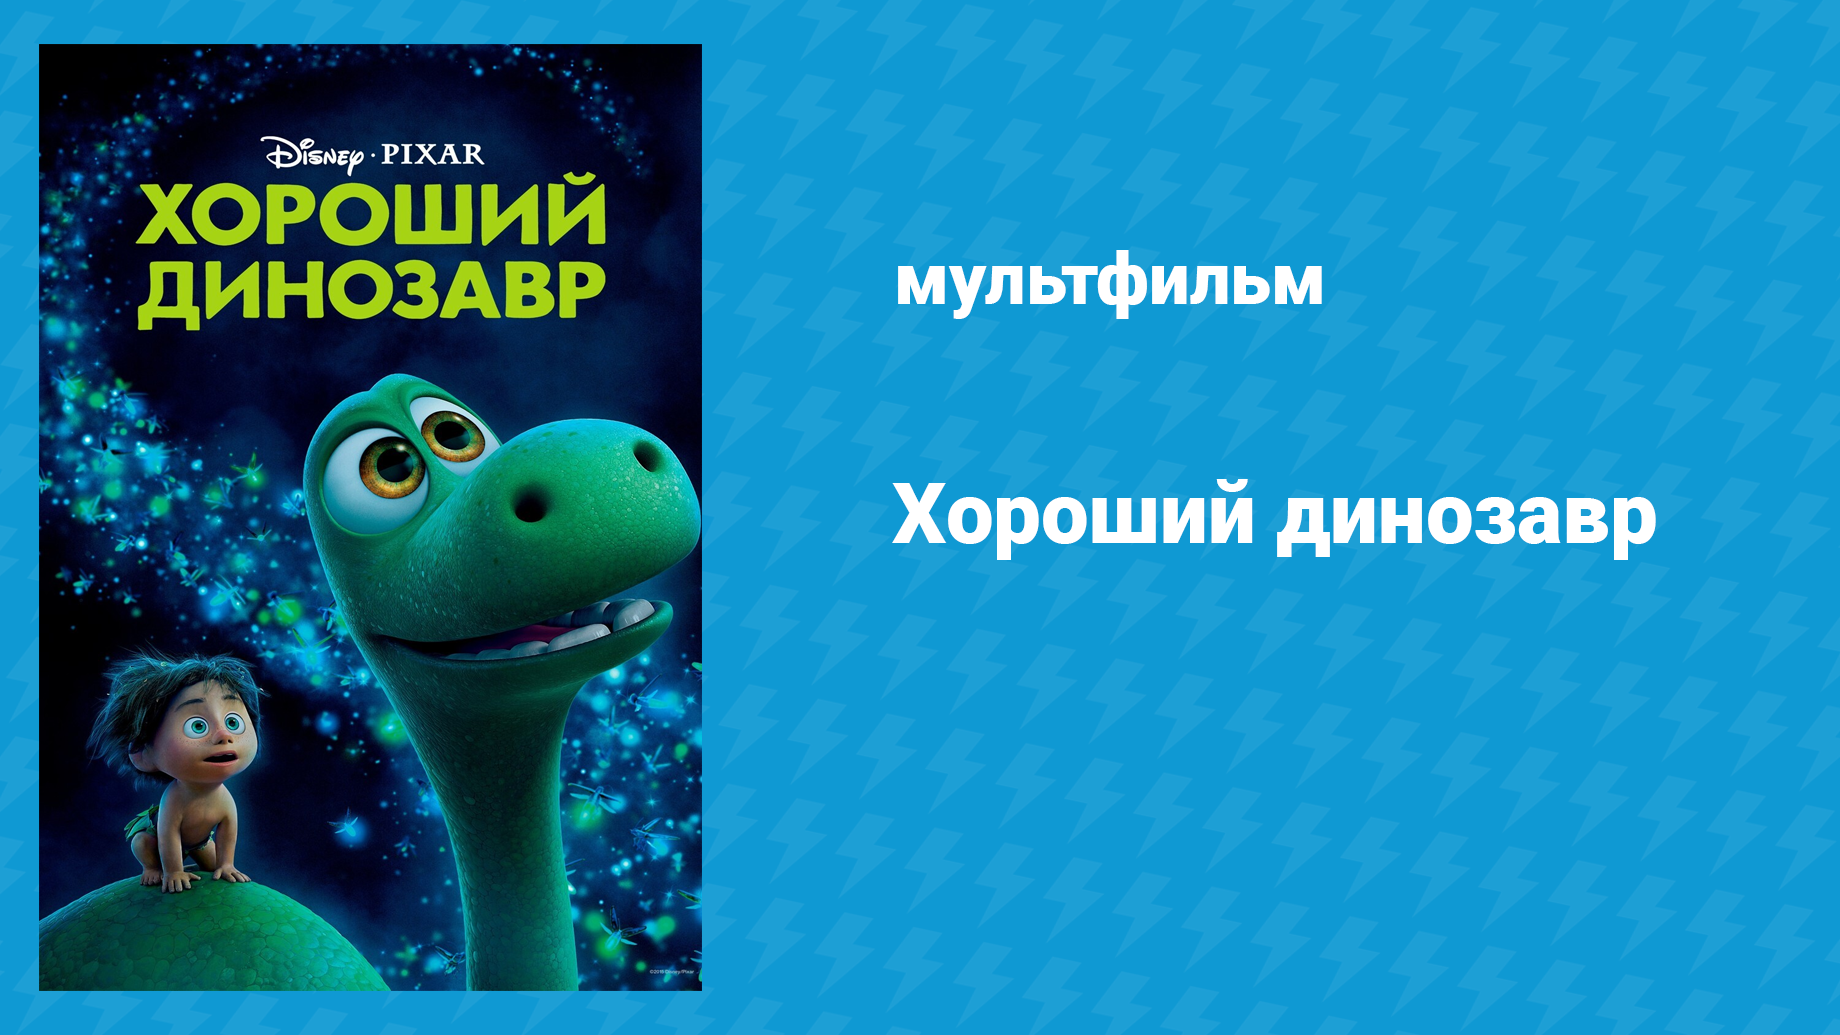 Хороший динозавр (мультфильм, 2015)